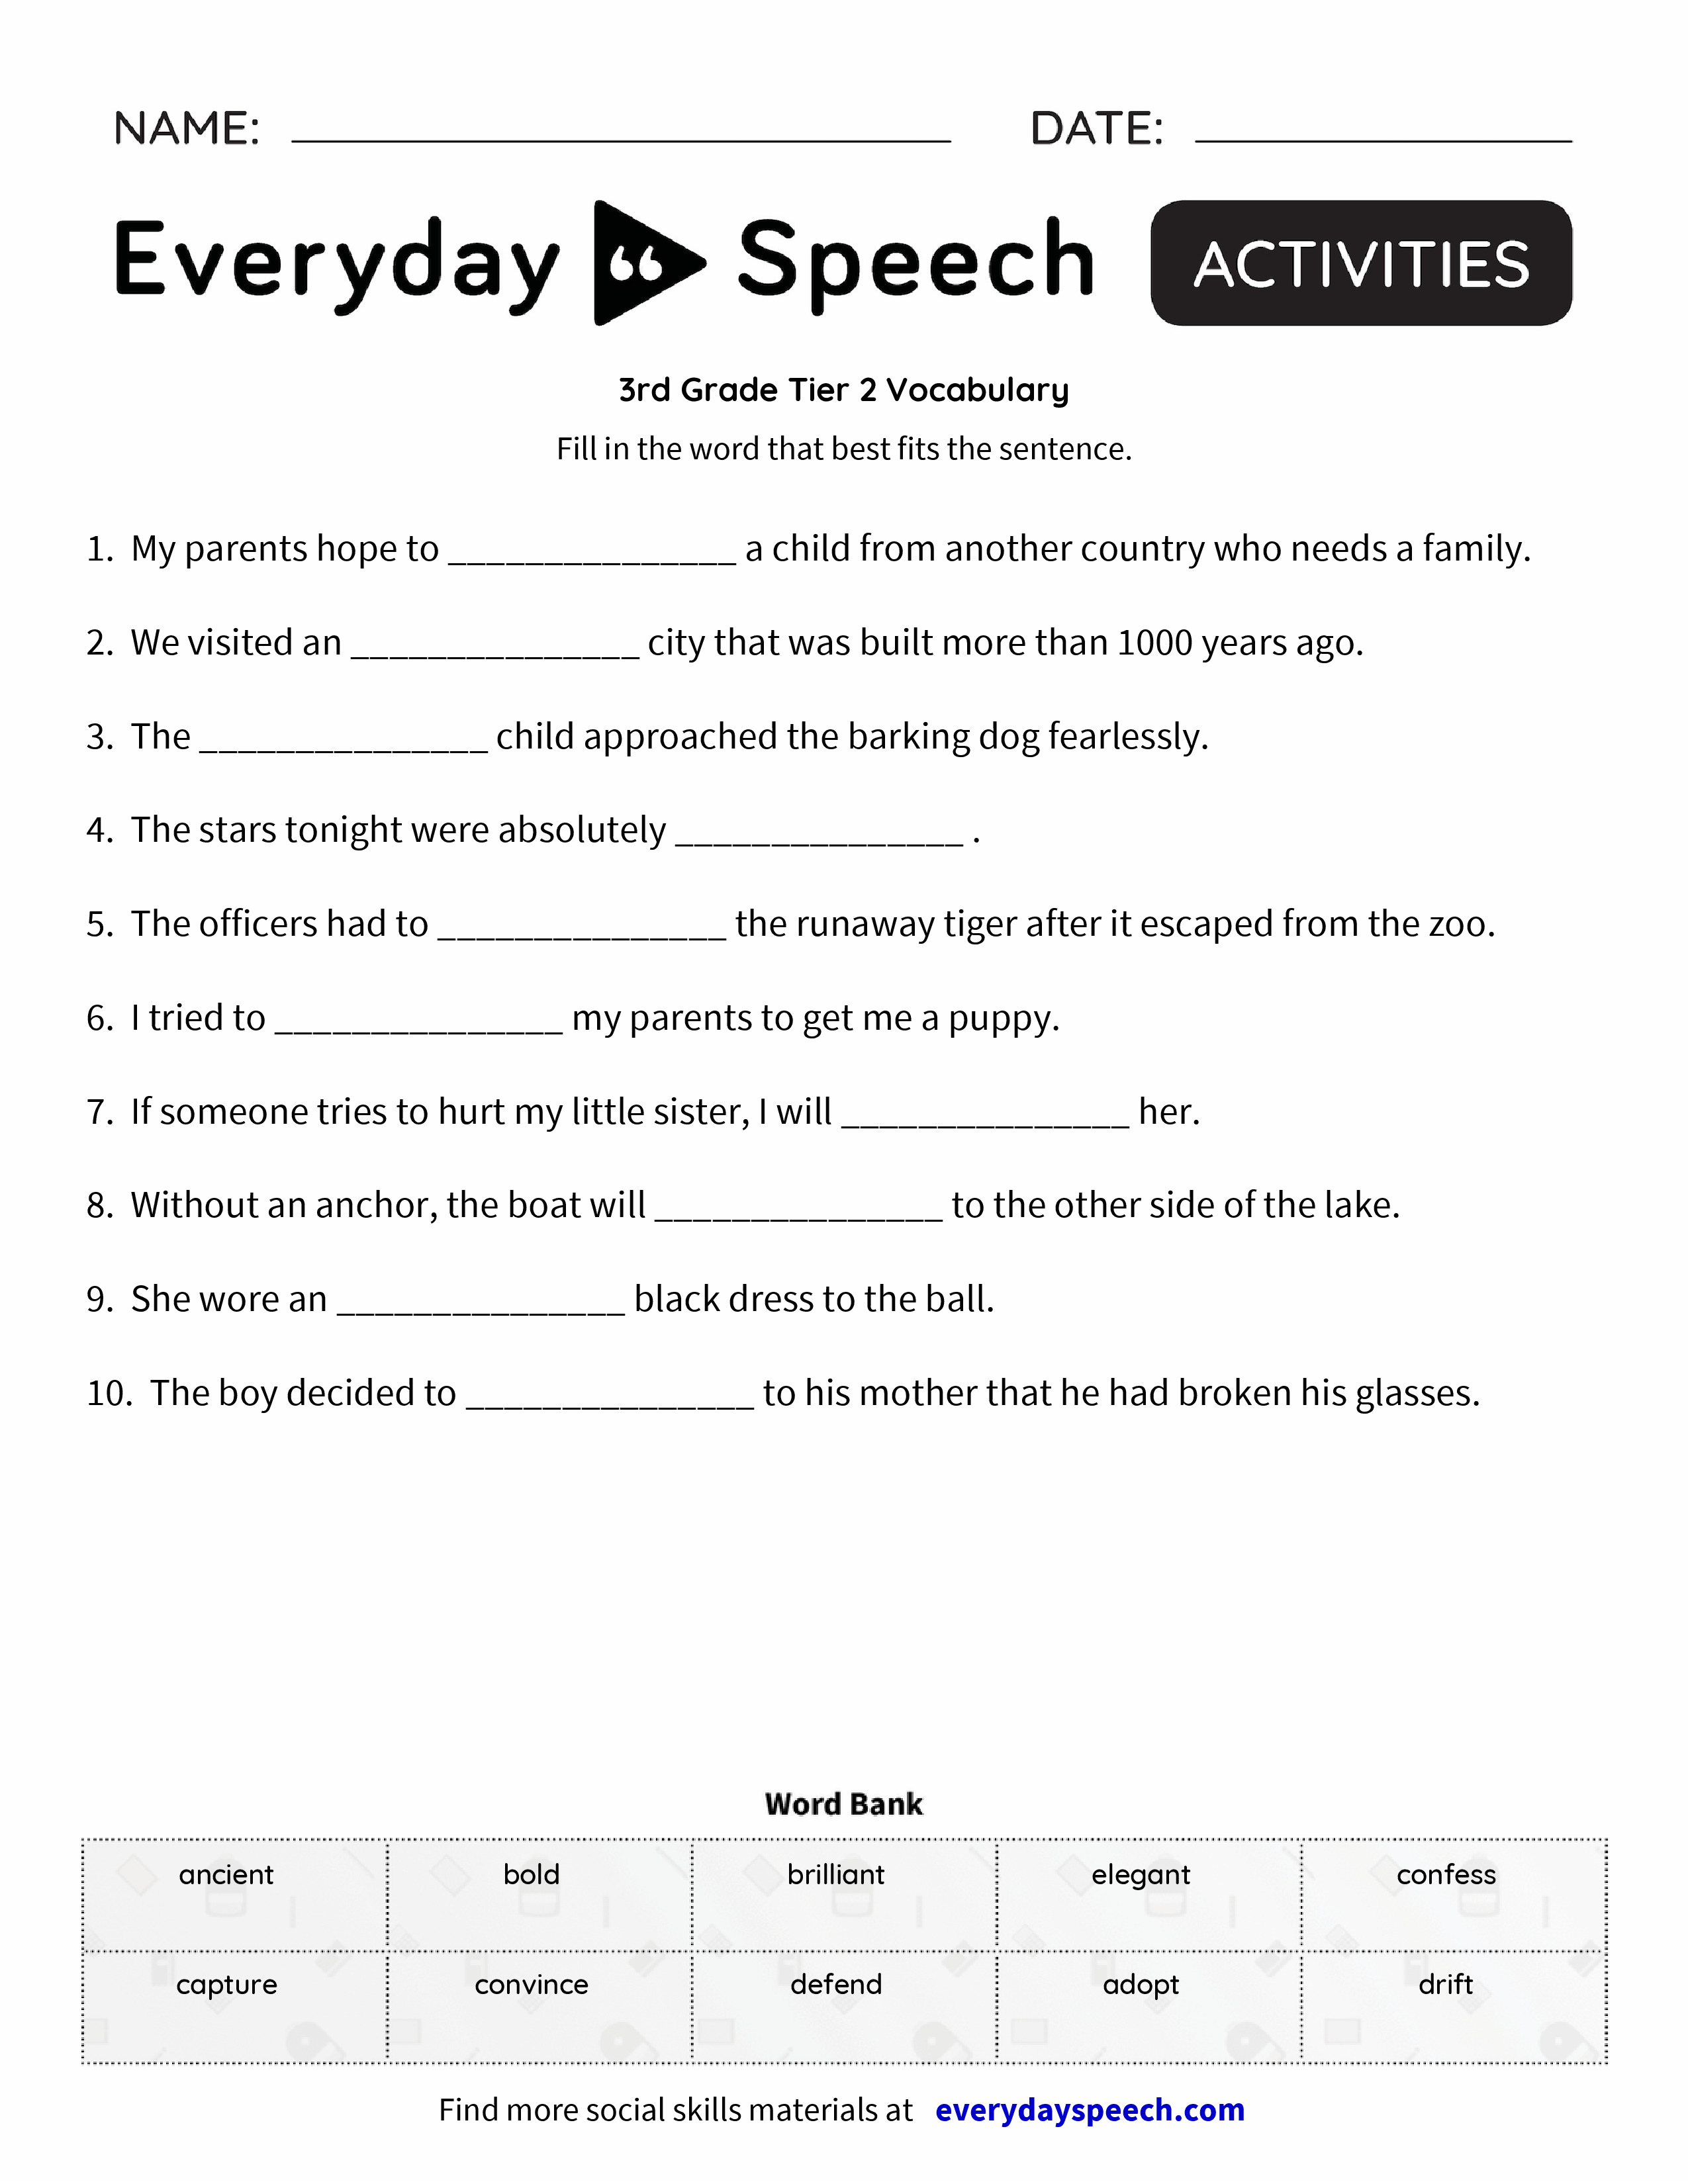 3rd Grade Tier 2 Vocabulary Everyday Speech Everyday